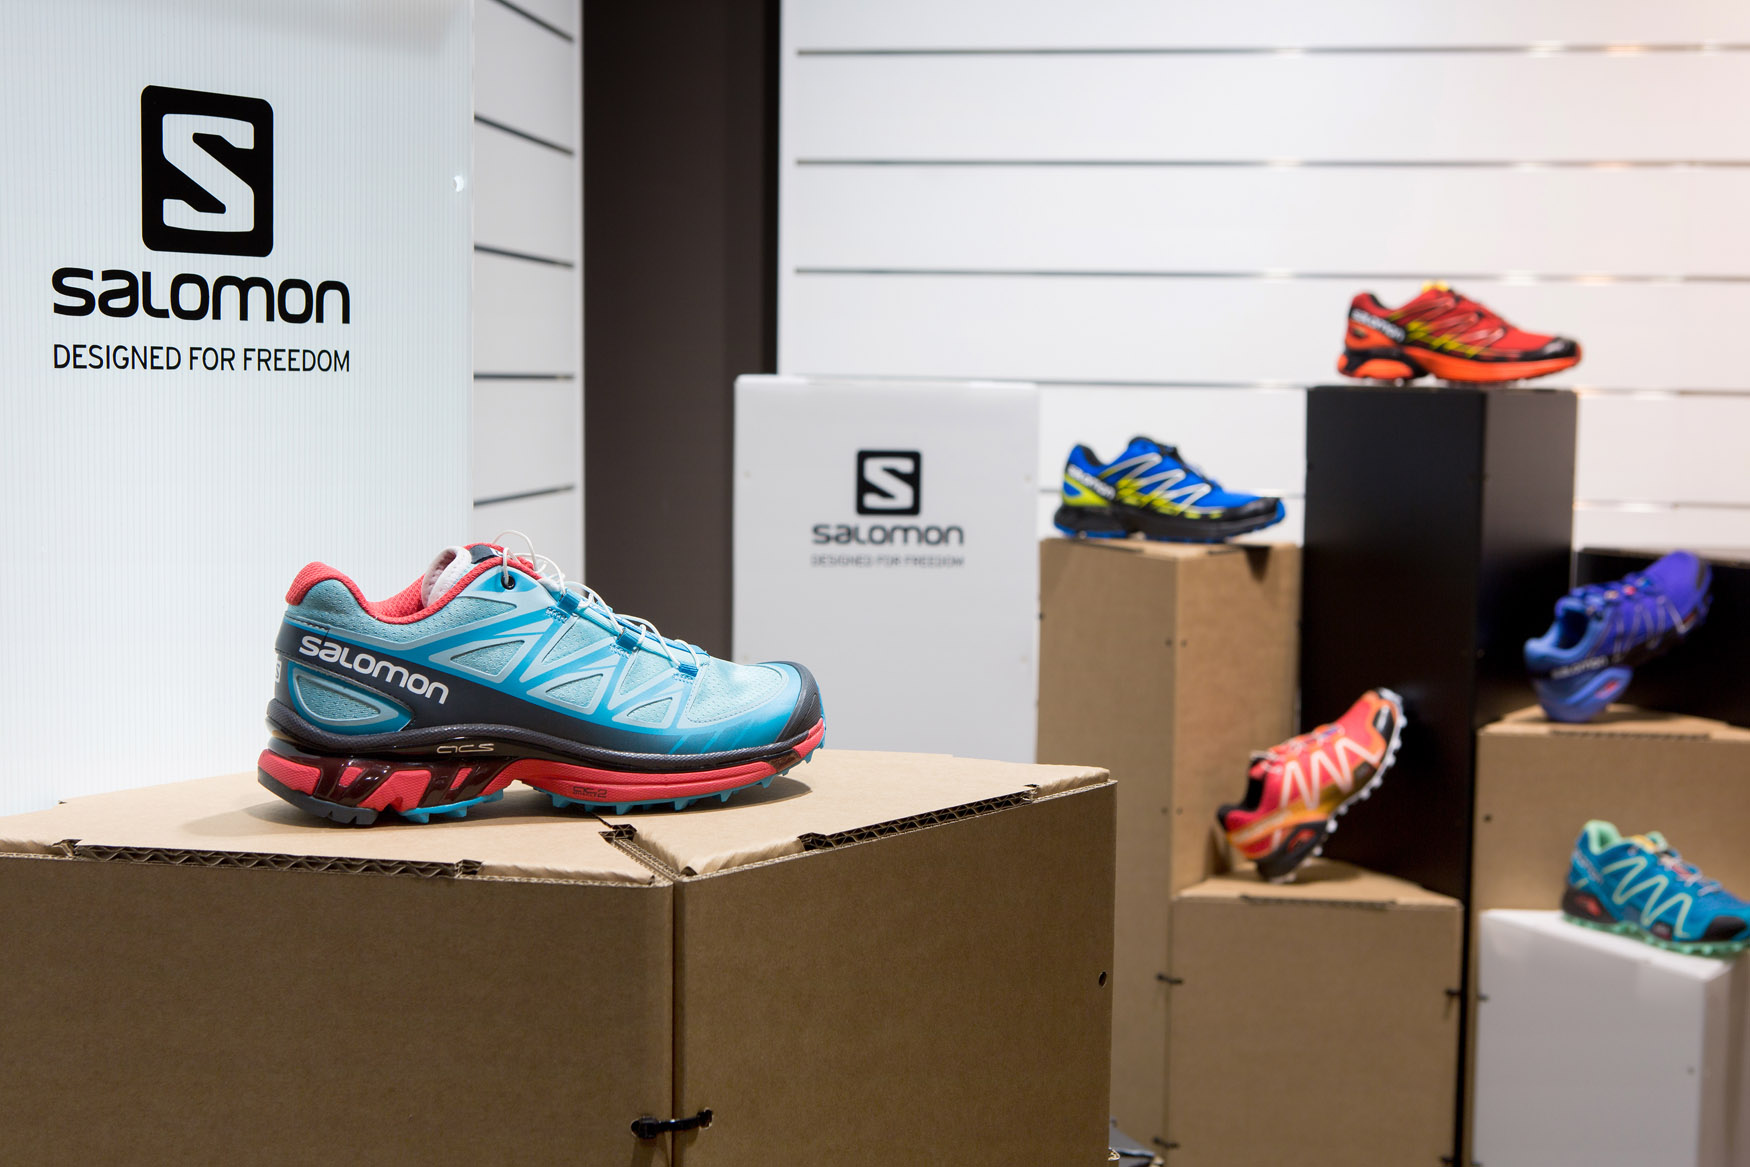 Corner expositivo para calzado de Salomon showroom Barcelona Ammer Sports Triplo* Sistema constructivo en cartón